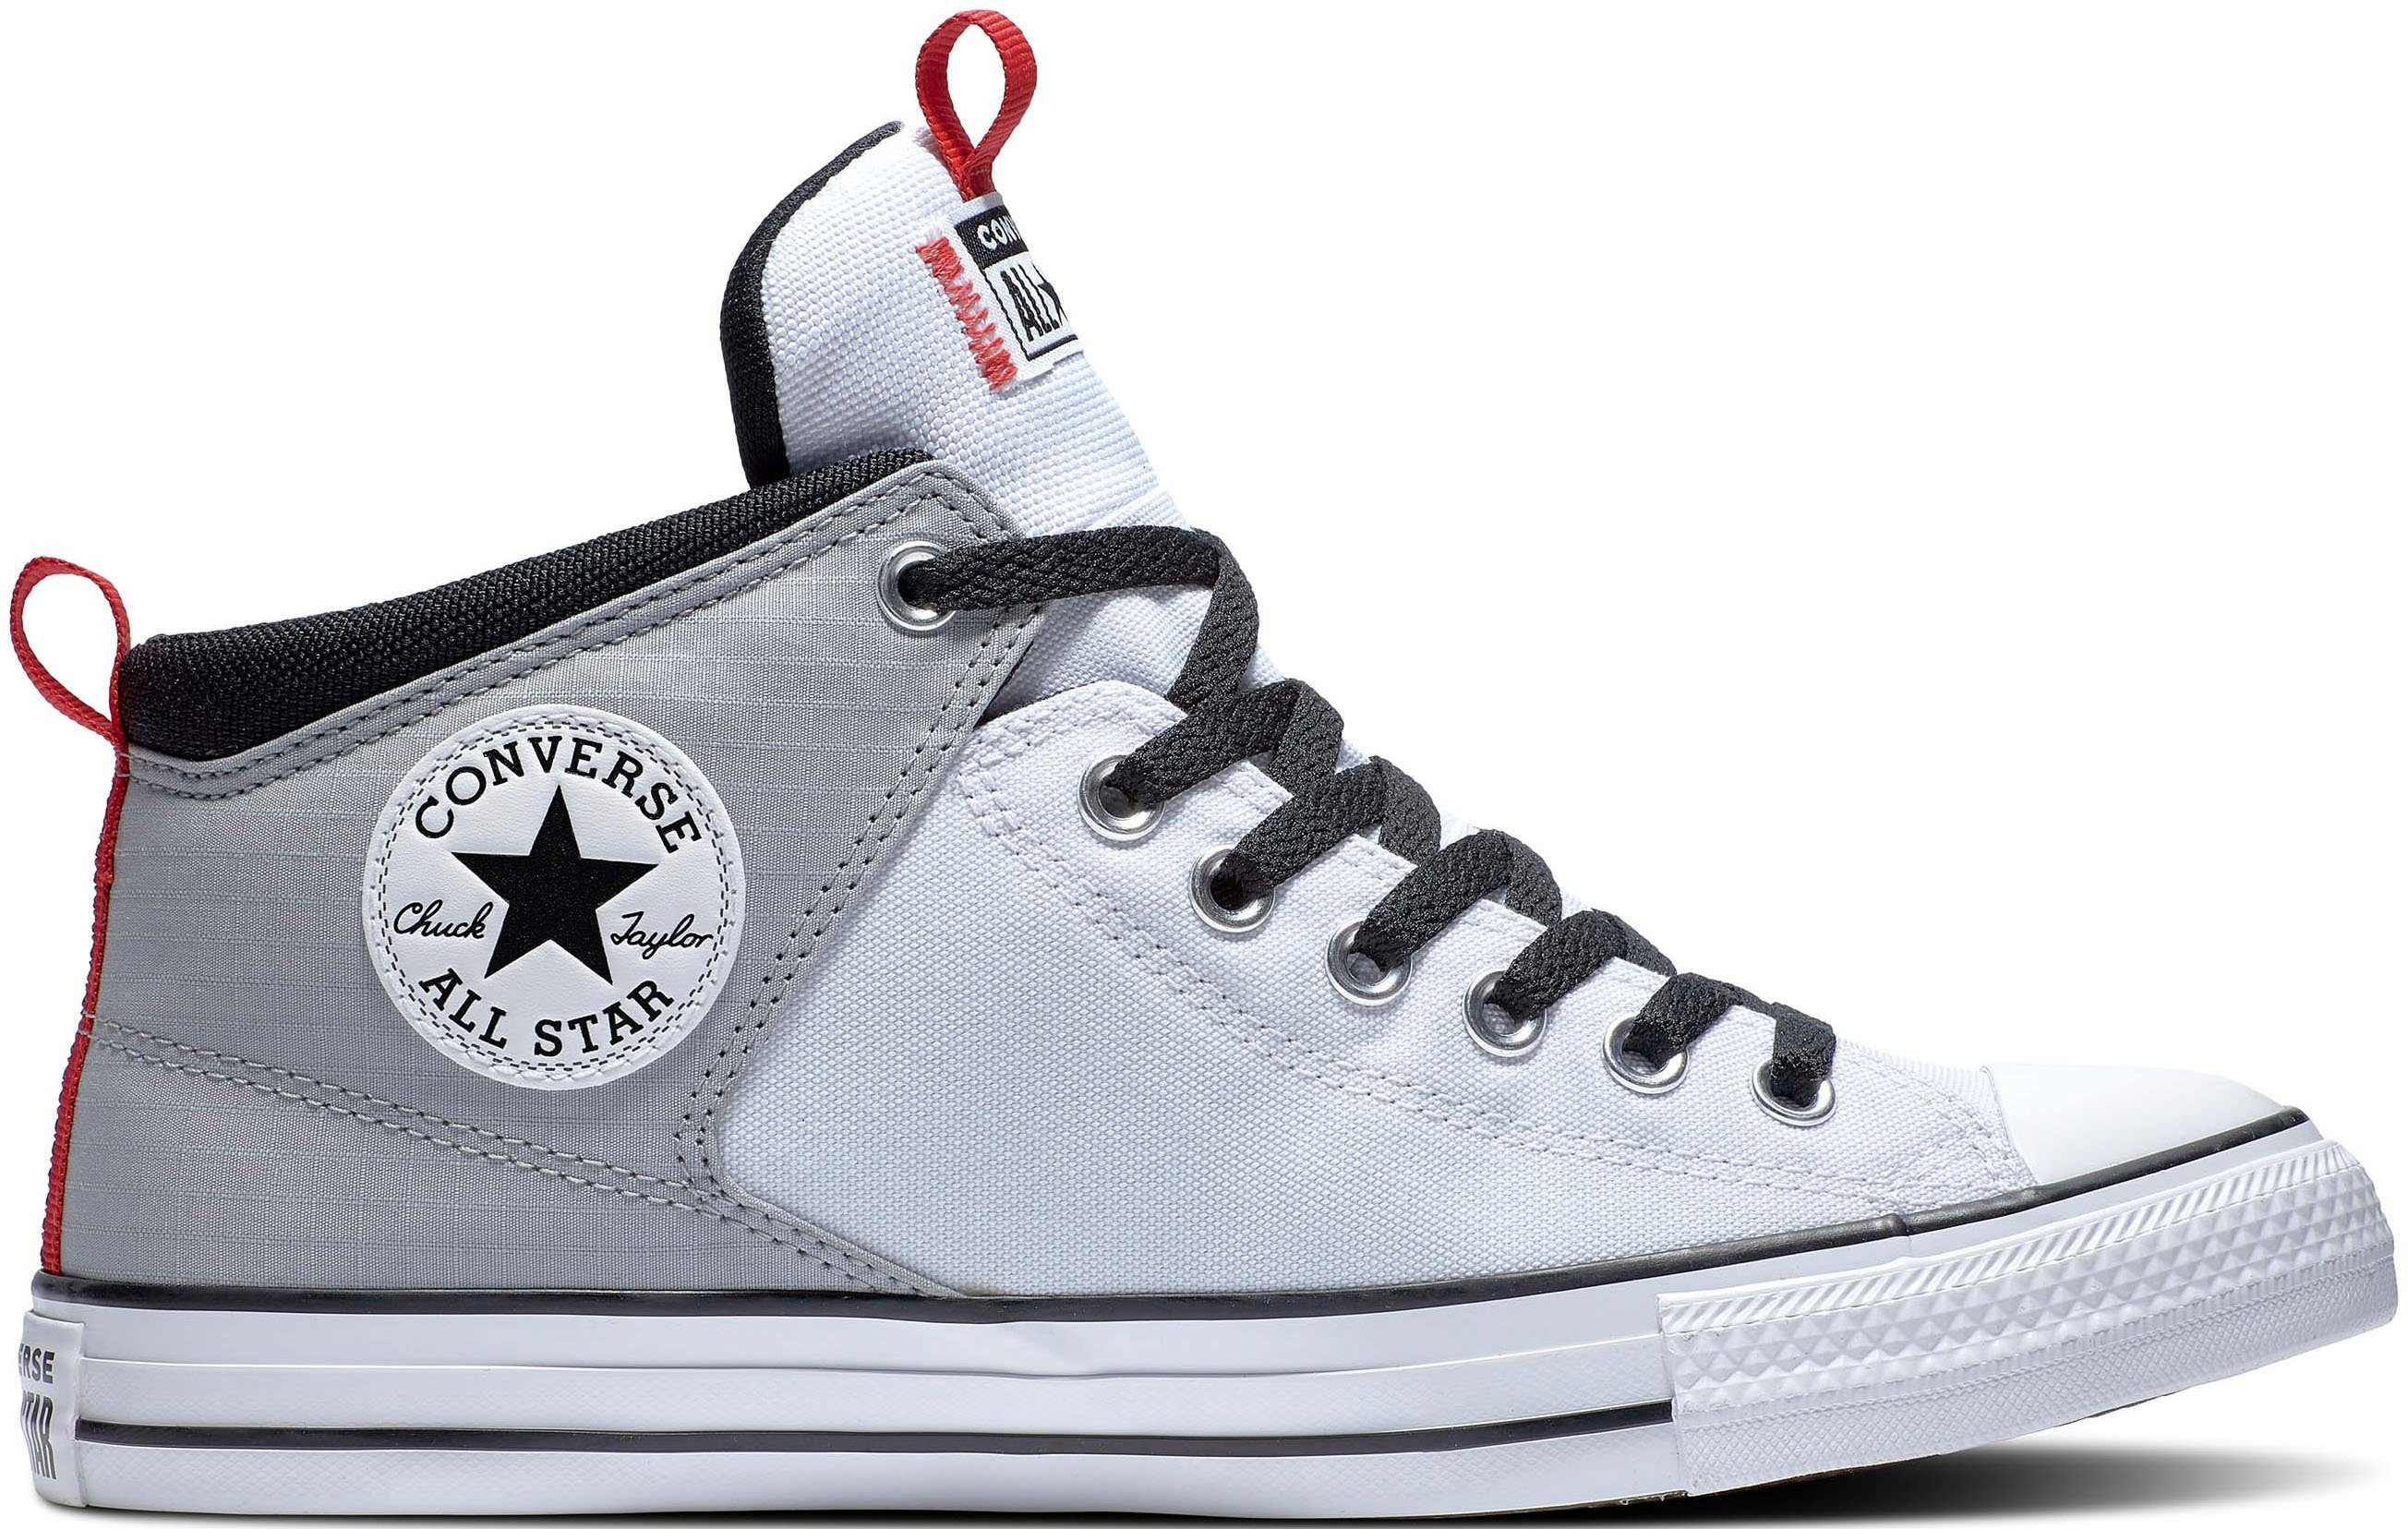 Chucks online kaufen » Converse Schuhe | OTTO